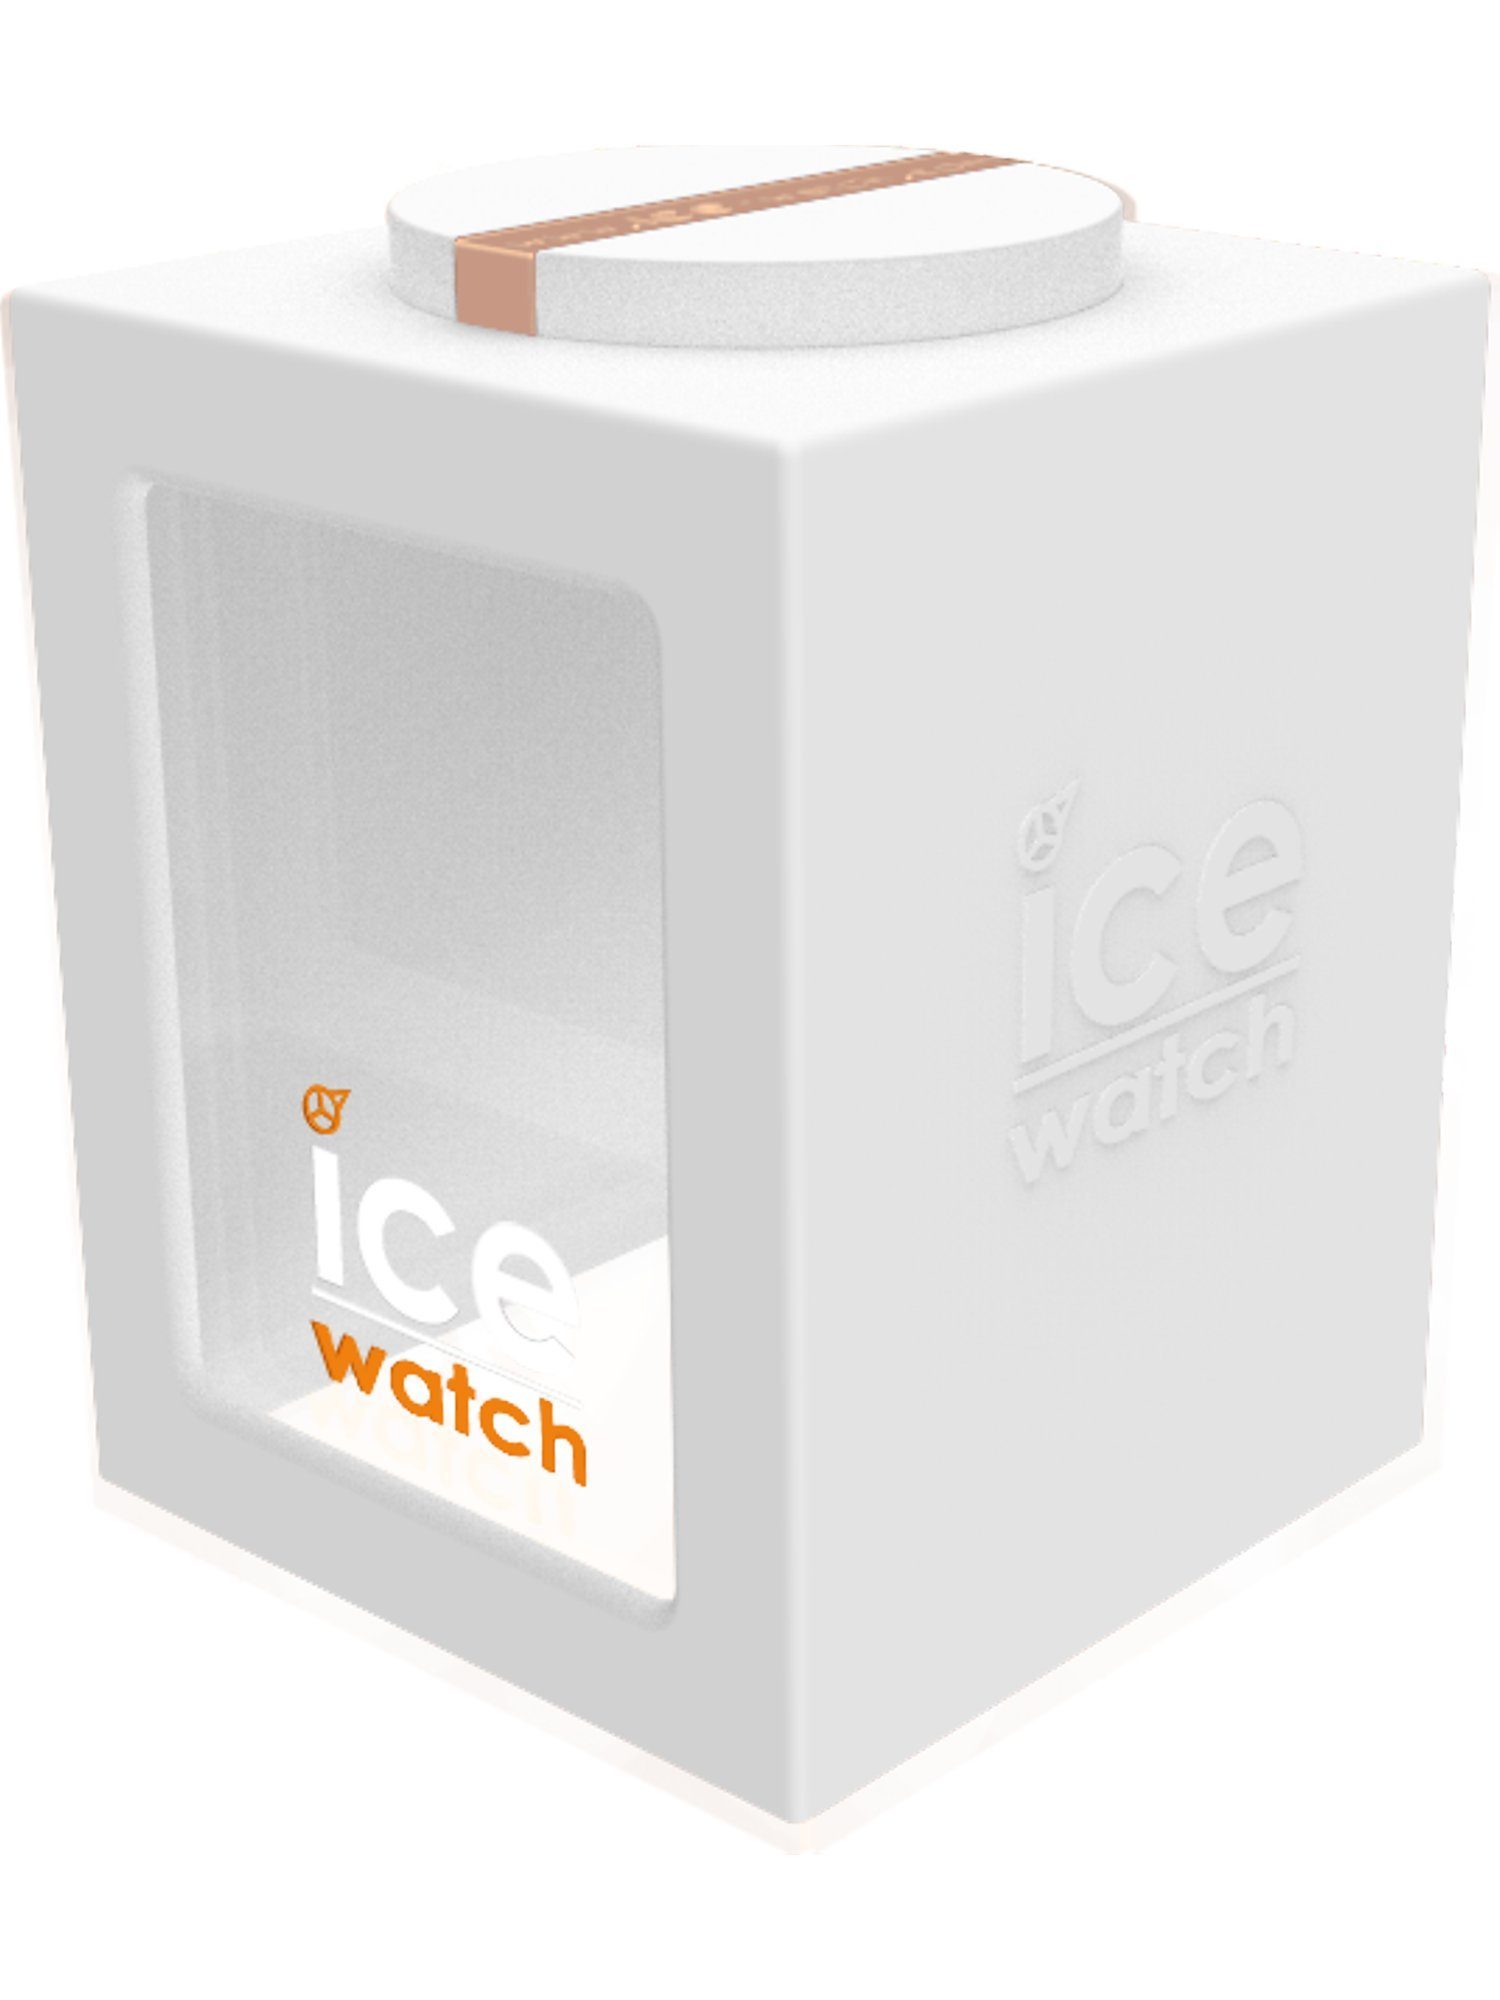 Quarz ice-watch ICE Damen-Uhren Watch Quarzuhr Analog